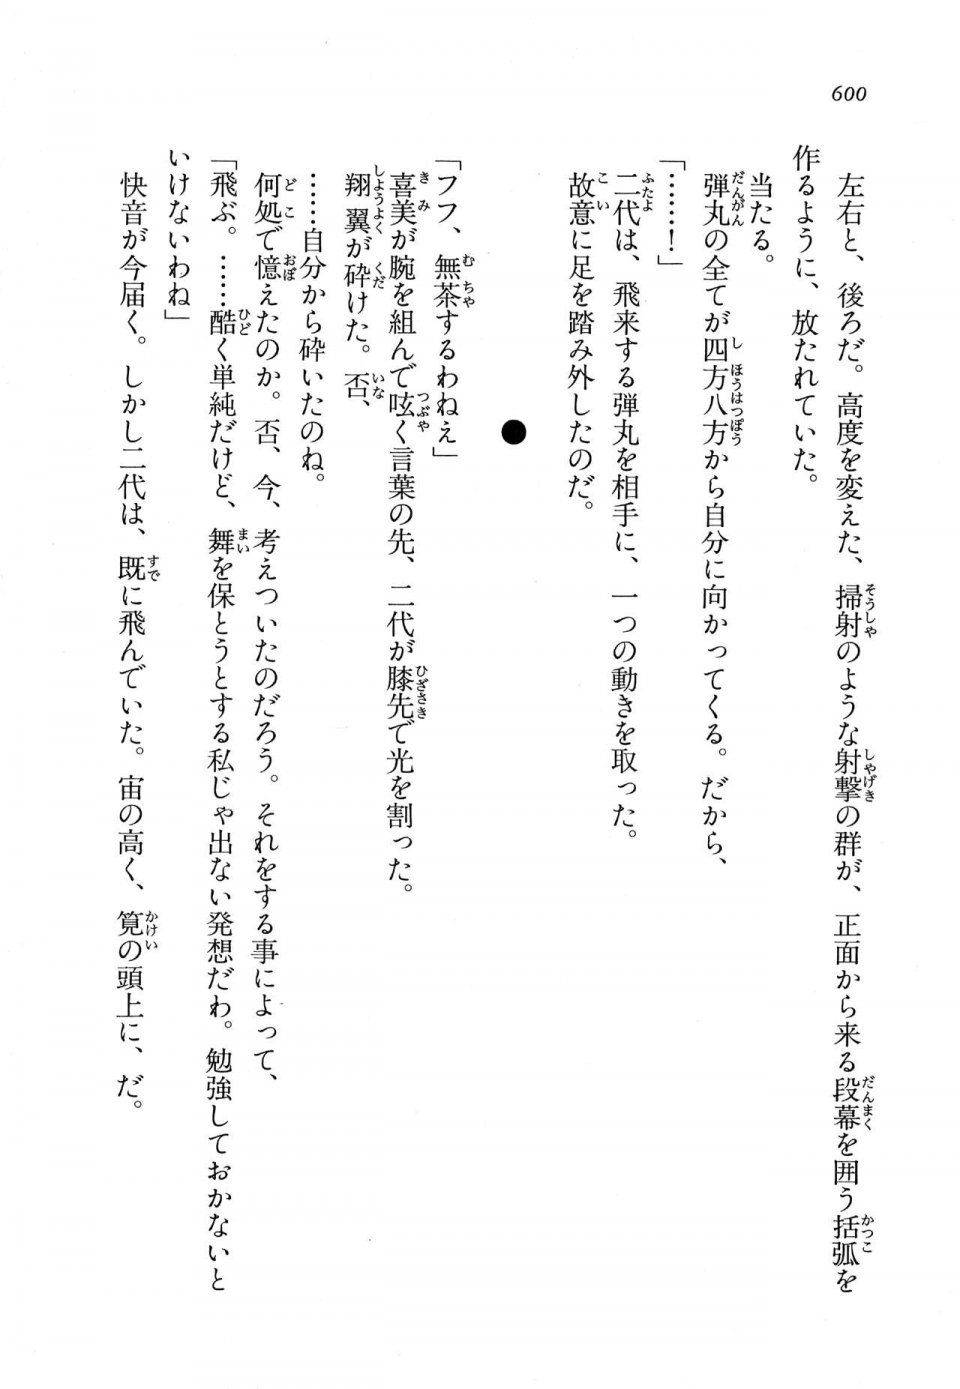 Kyoukai Senjou no Horizon LN Vol 11(5A) - Photo #600